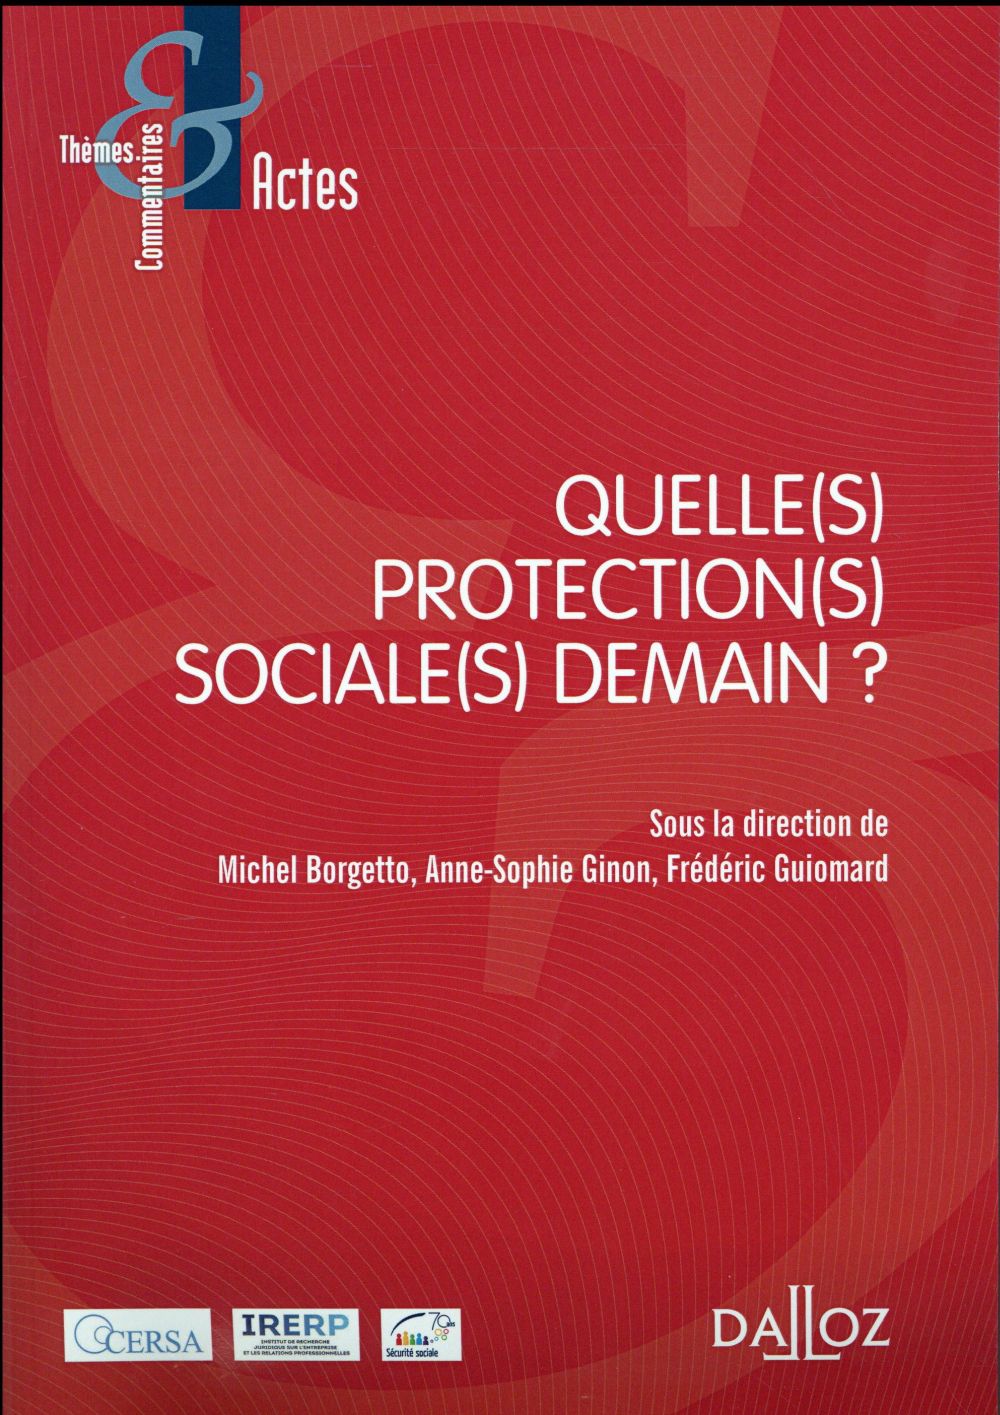 QUELLE(S) PROTECTION(S) SOCIALE(S) DEMAIN ?